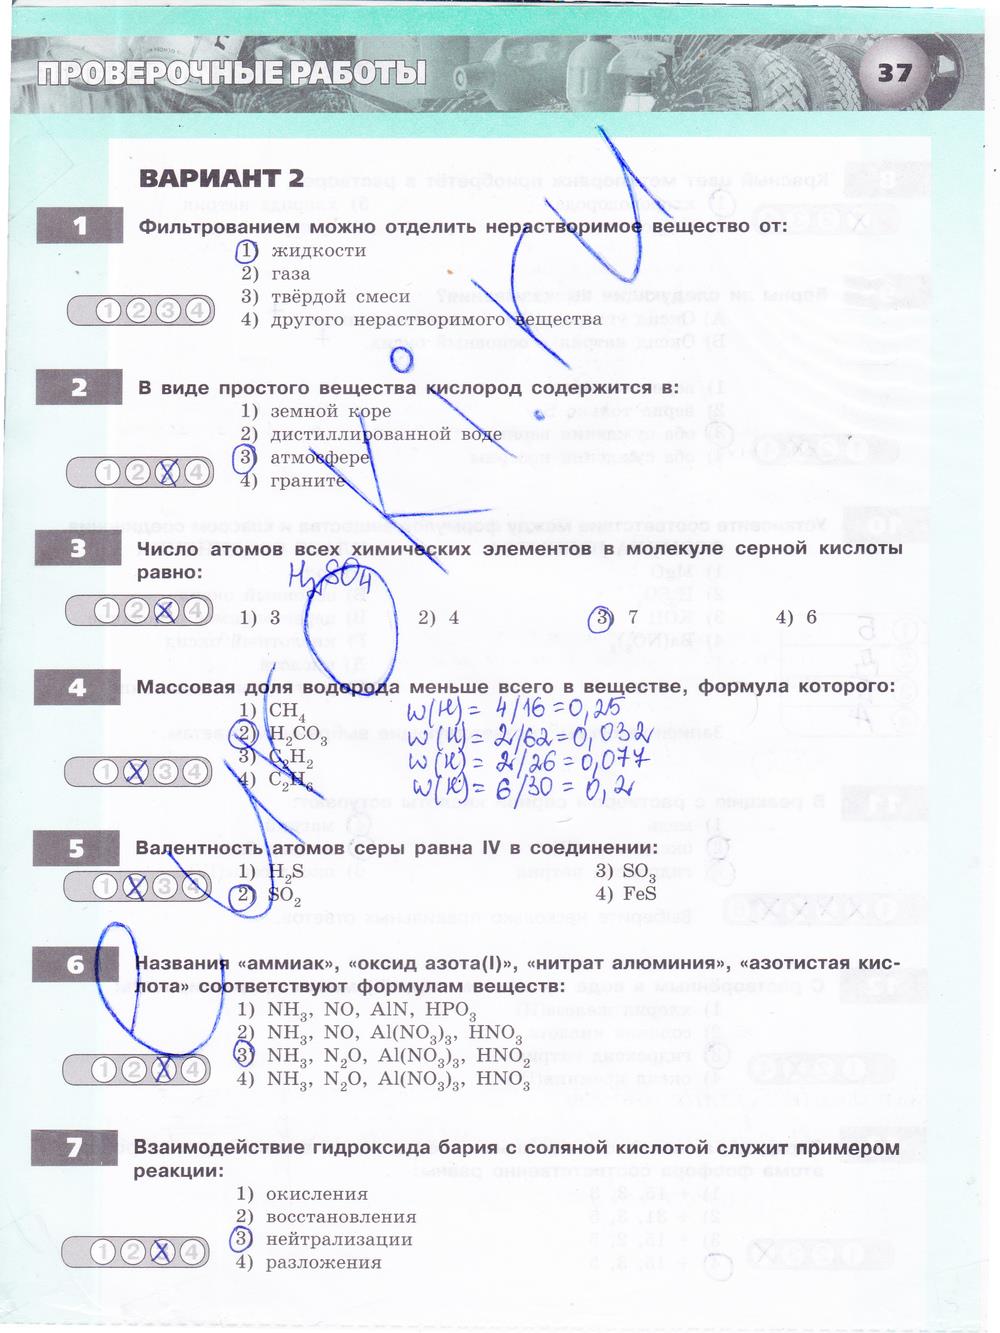 гдз 8 класс тетрадь-экзаменатор страница 37 химия Бобылева, Бирюлина